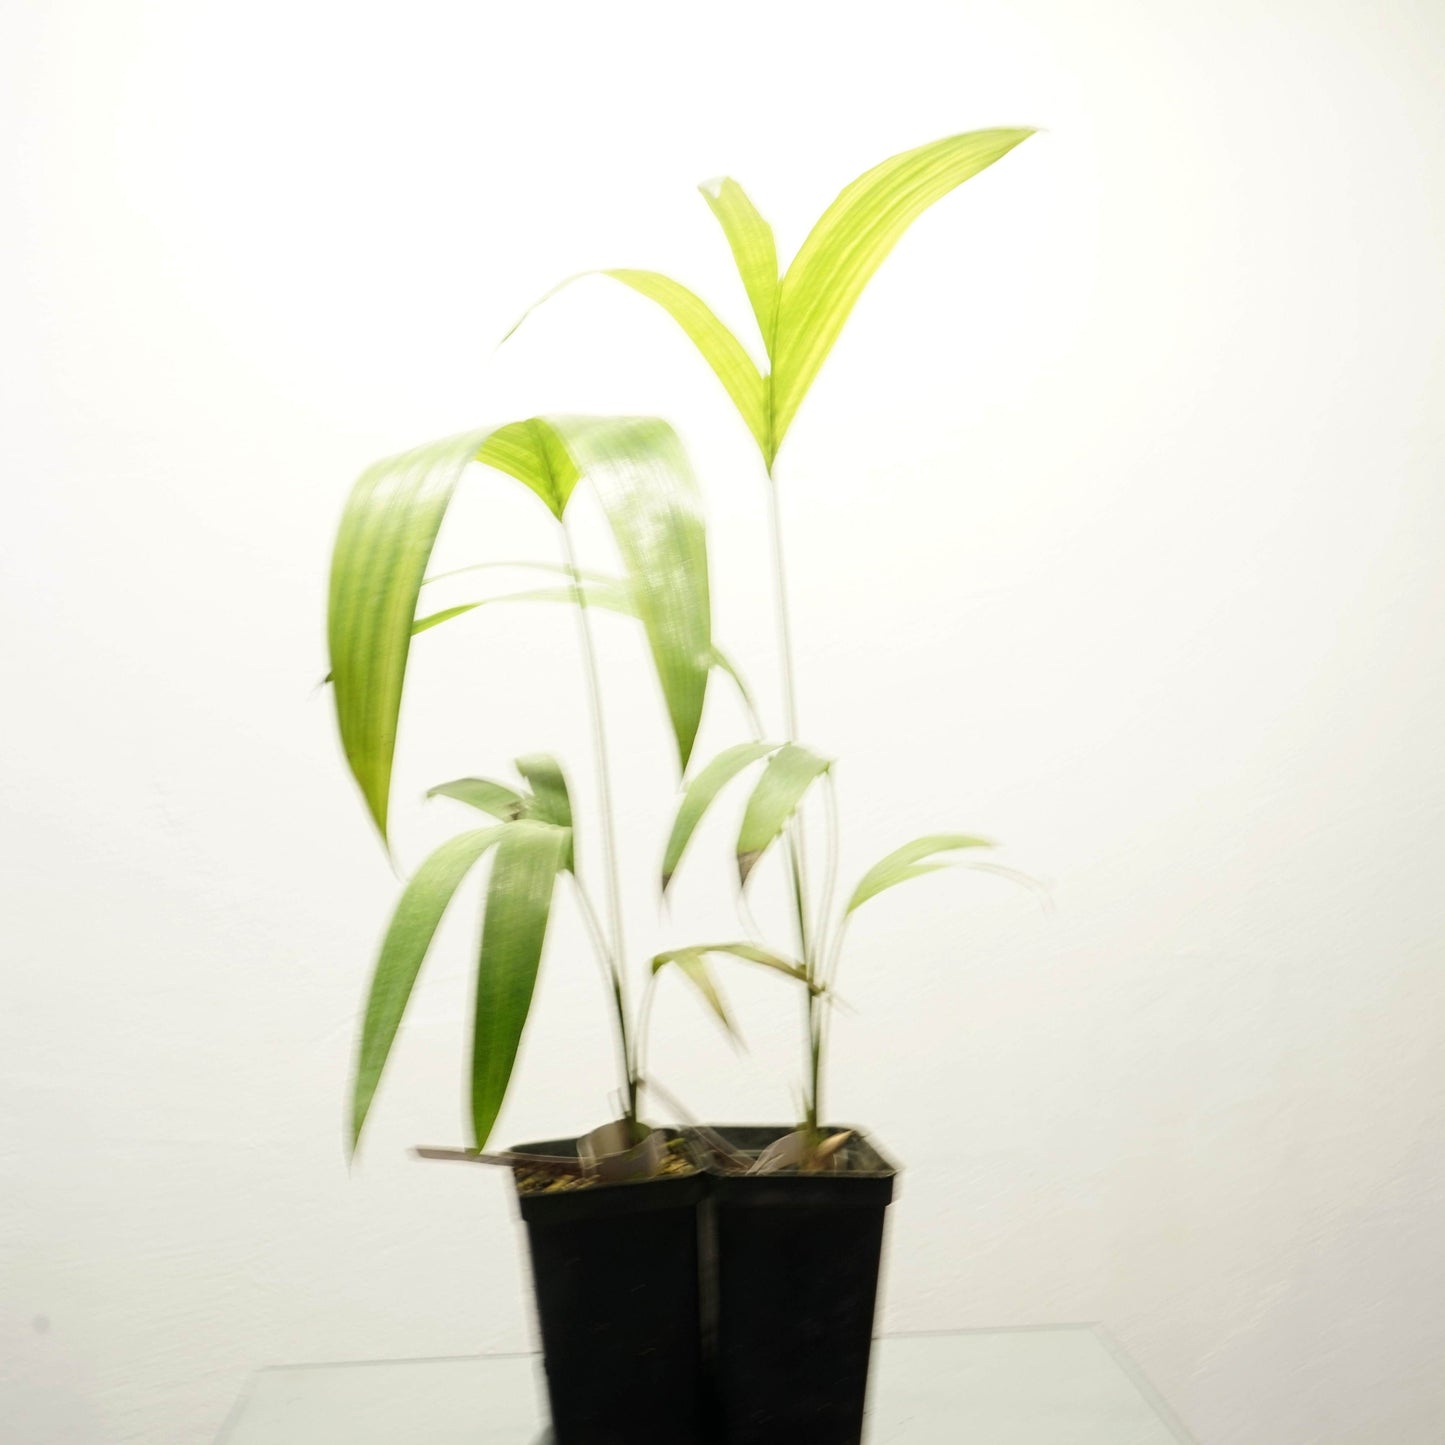 Rocky River palm - Archontophoenix tuckeri 20- 30 cm plant